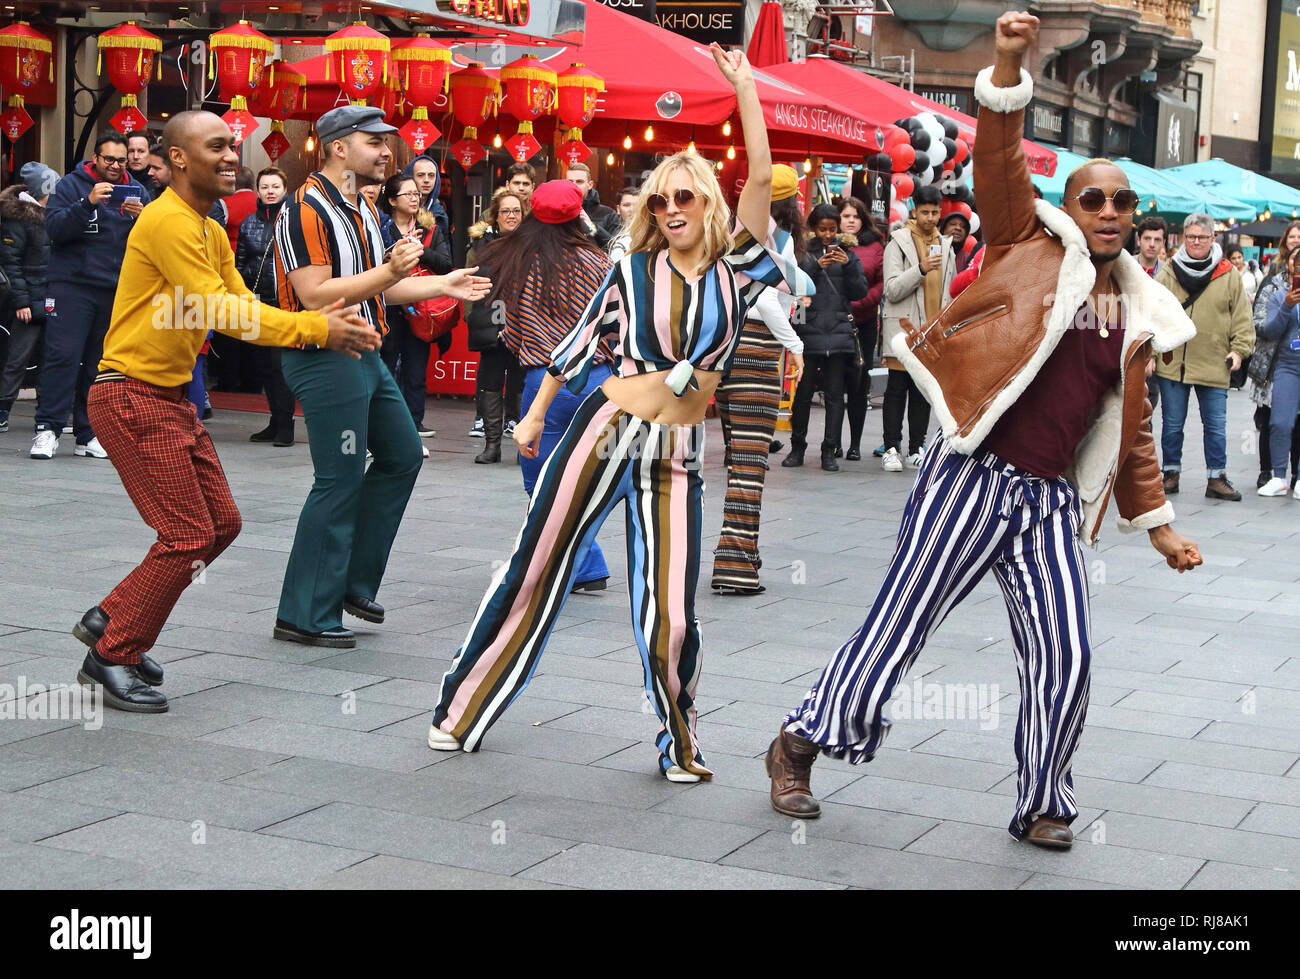 Il Soul Americana equipaggio vede ballare insieme per le strade di Londra. In onore della scommessa (Black Entertainment Television) della rete groovy di nuovo periodo di dramma, Soul Americana, un flash mob dance prendere in consegna per le strade di Londra. Foto Stock